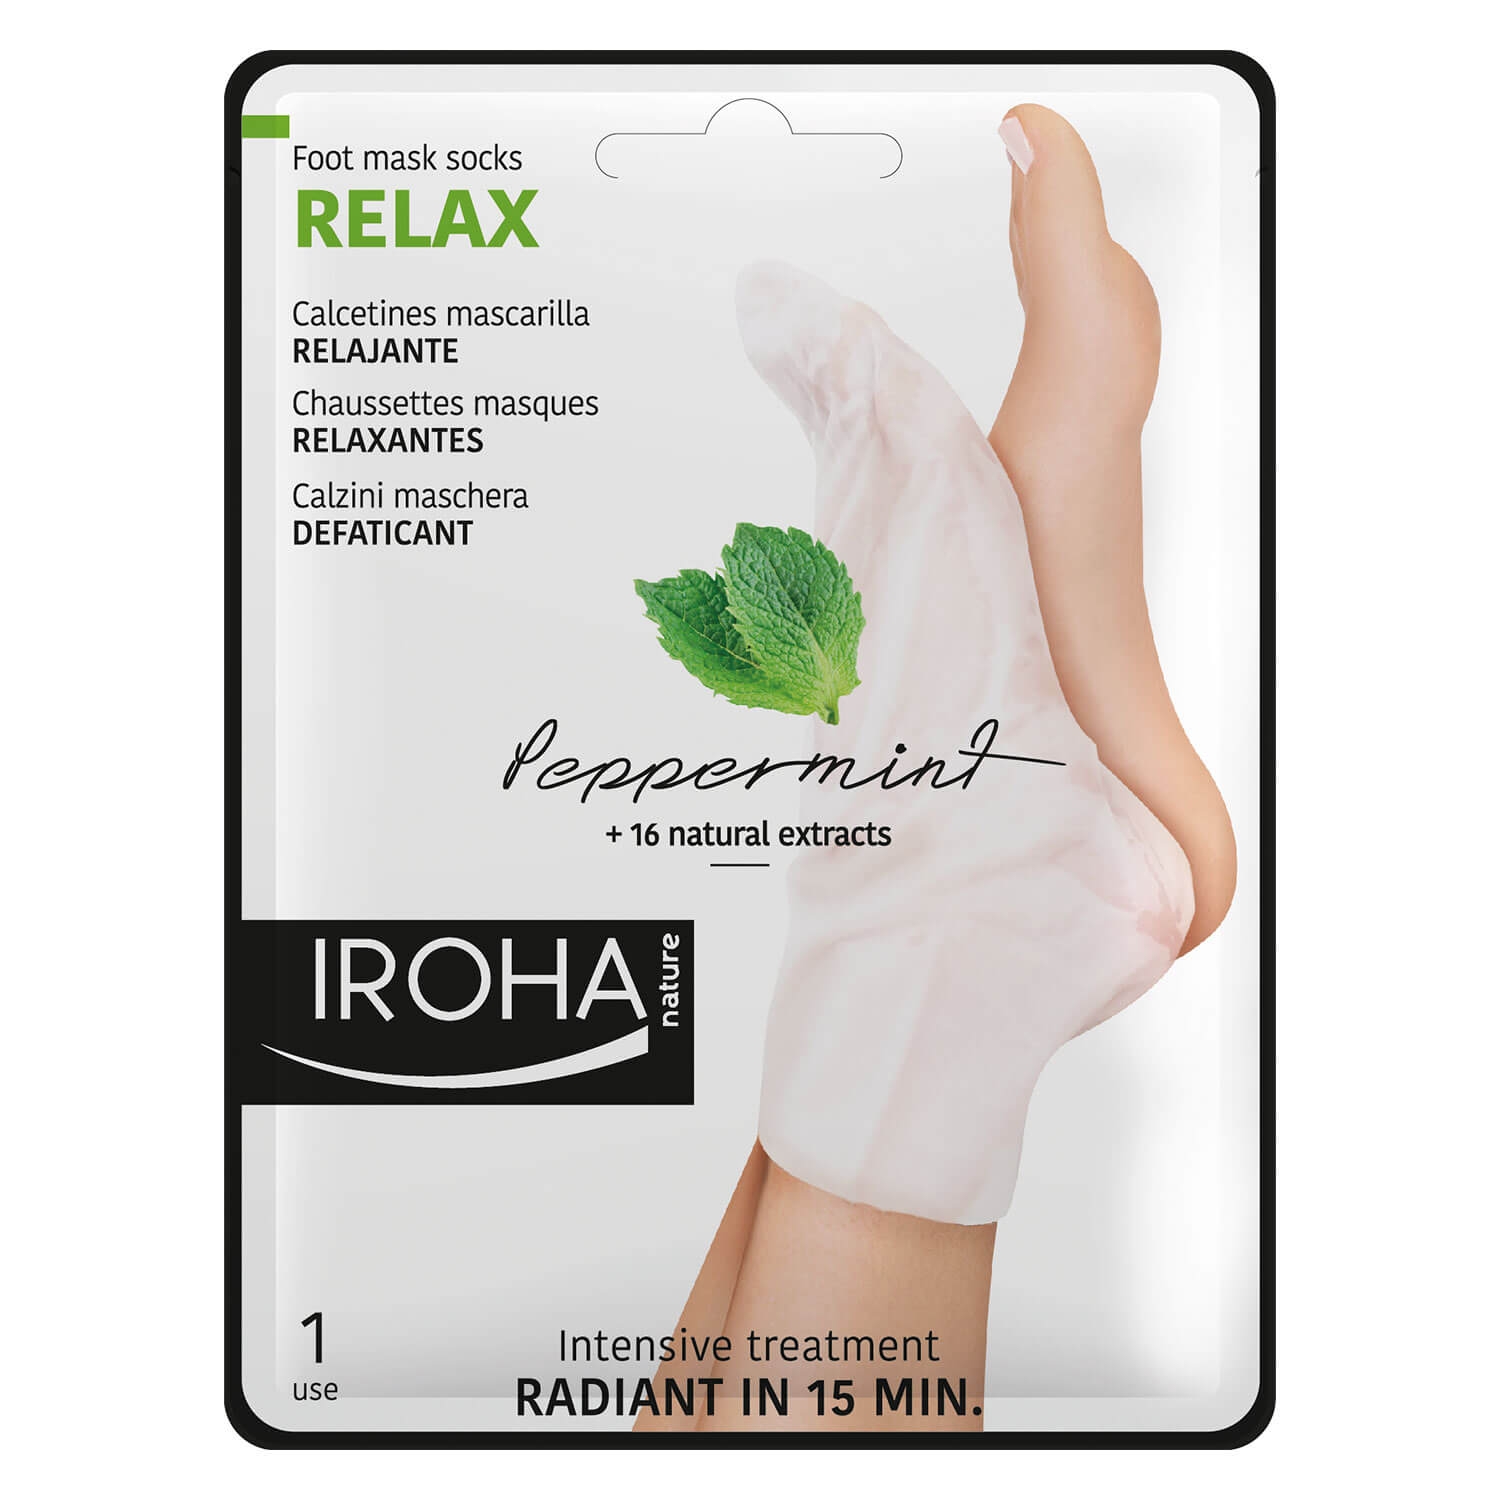 Produktbild von Iroha Nature - Foot Mask Socks Relax Peppermint